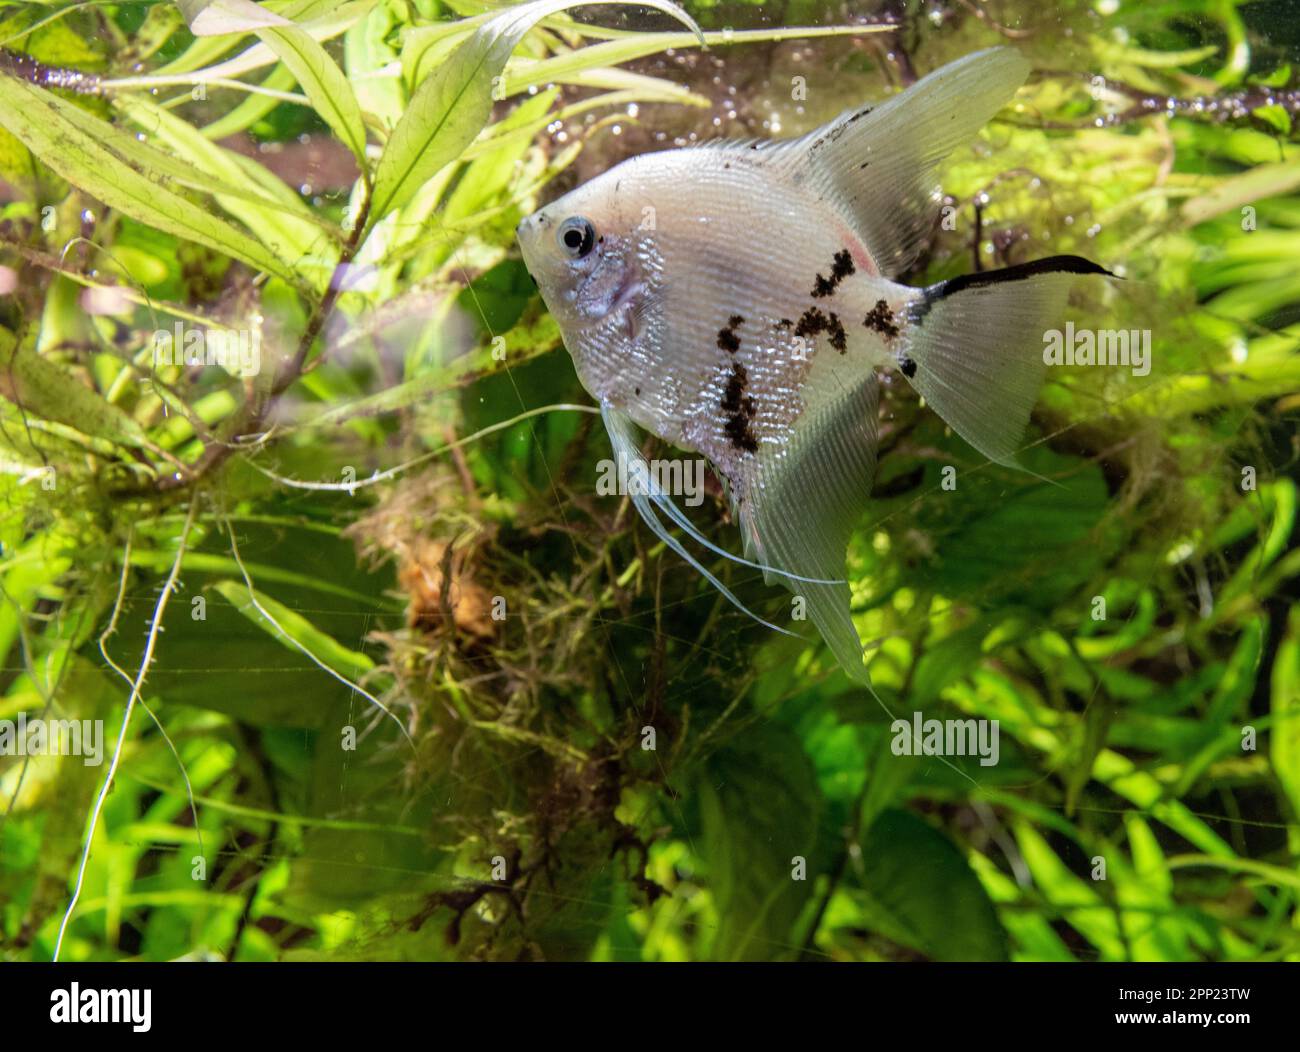 Un poisson vivant, à finnes noires, nageant dans un plan d'eau tranquille entouré d'une végétation luxuriante Banque D'Images